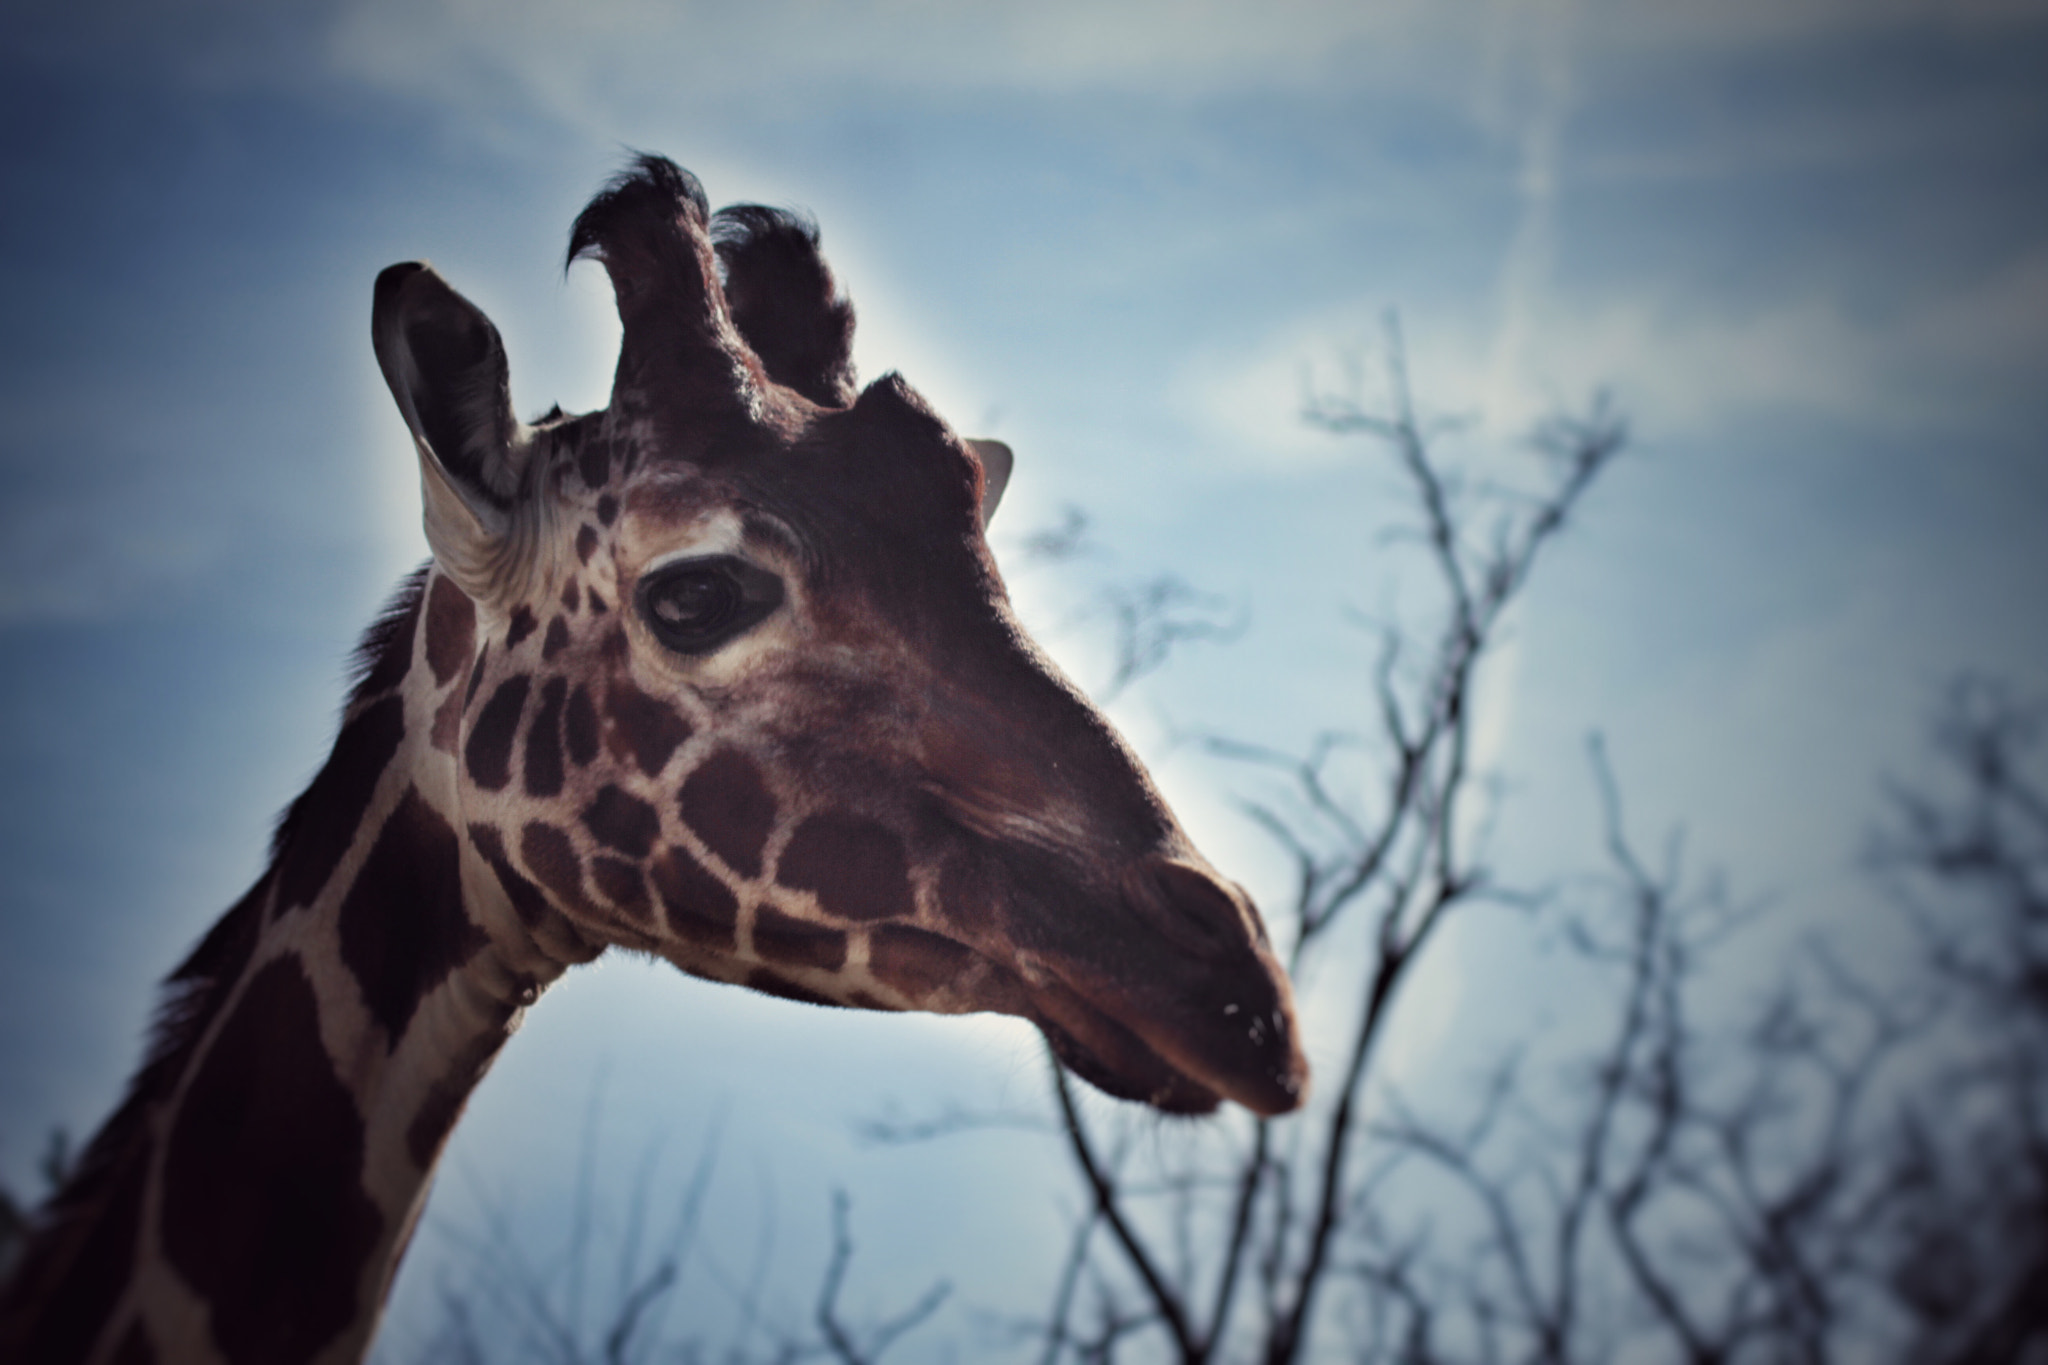 Canon EOS 7D sample photo. Giraffe photography